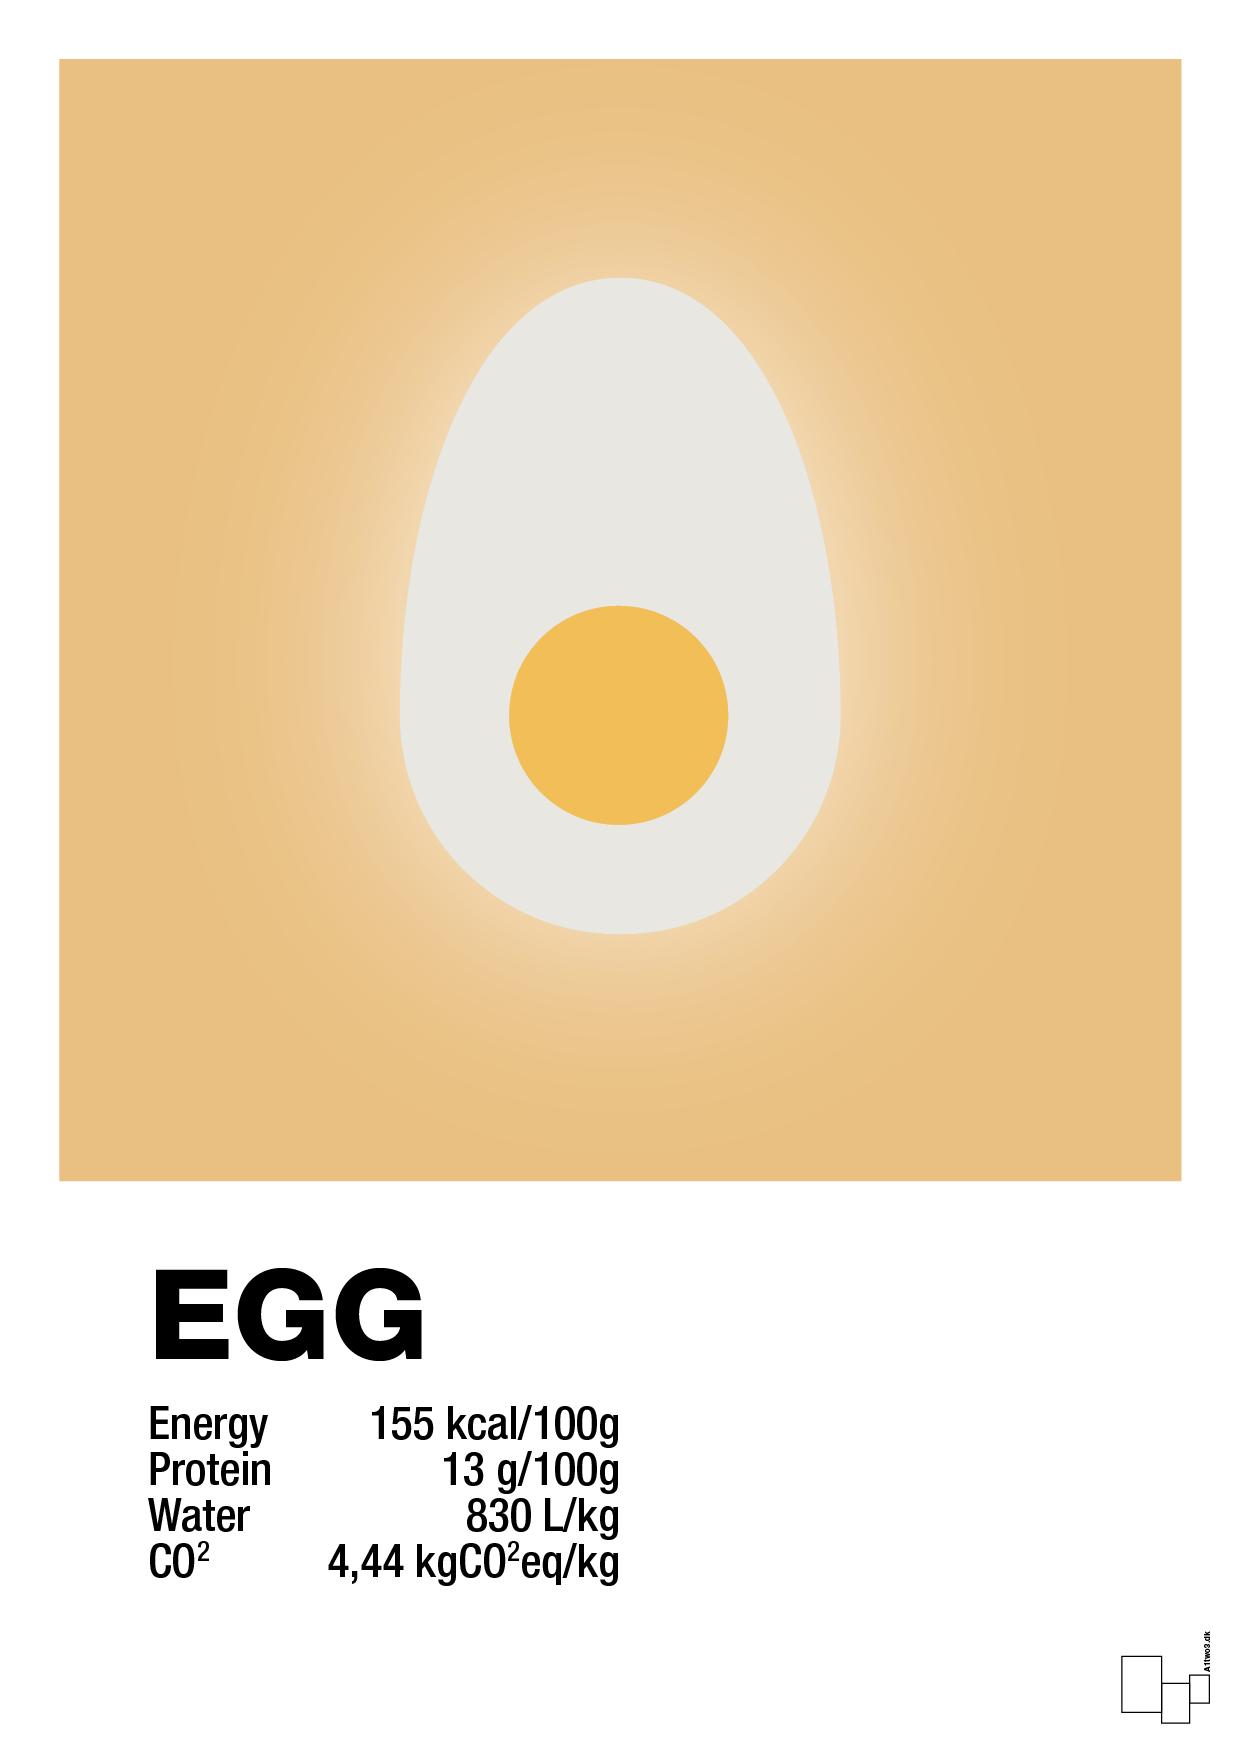 egg nutrition og miljø - Plakat med Mad & Drikke i Charismatic